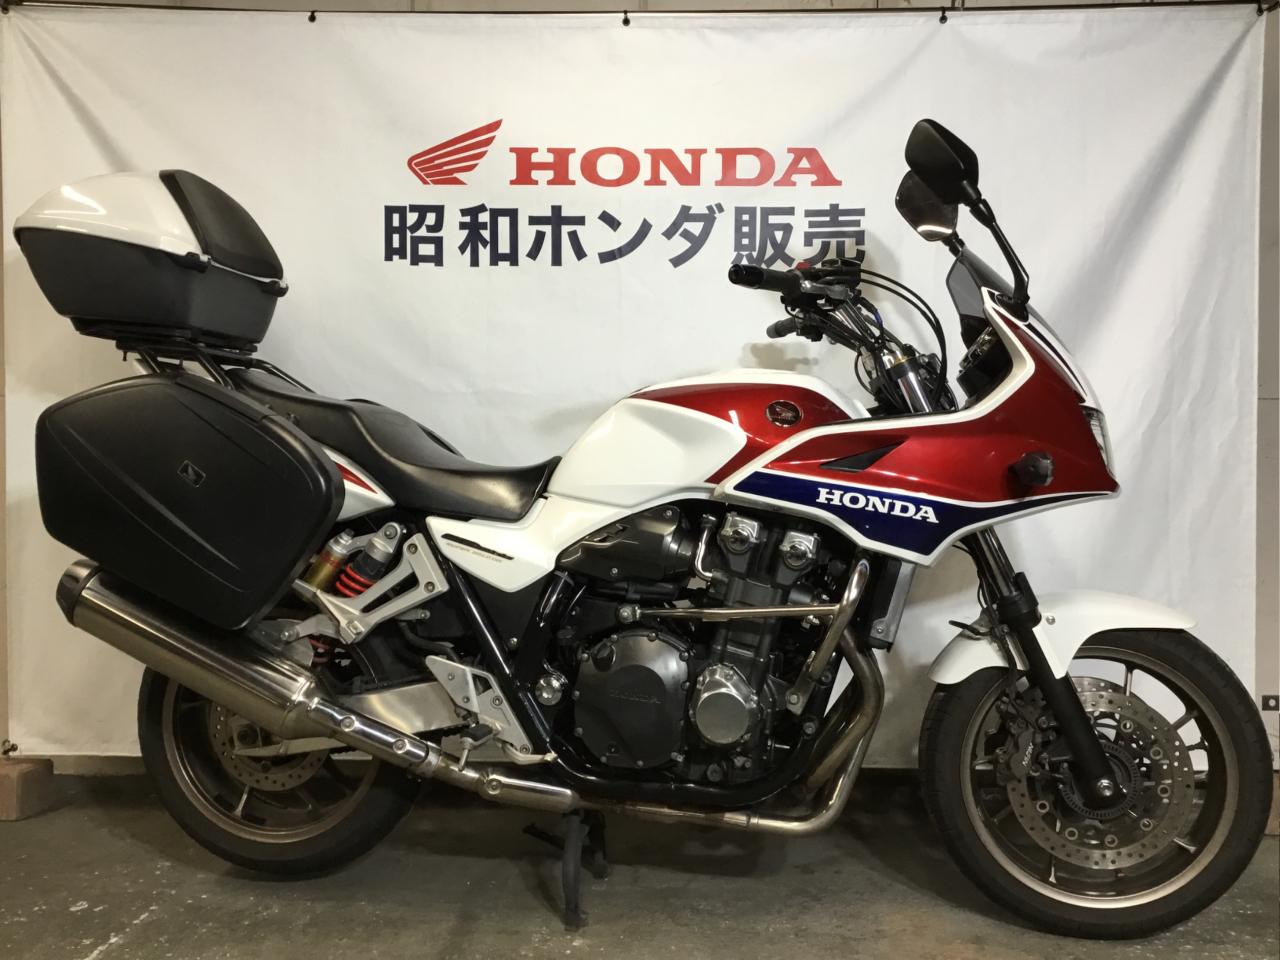 中古車 Honda CB1300 Super Bold'or